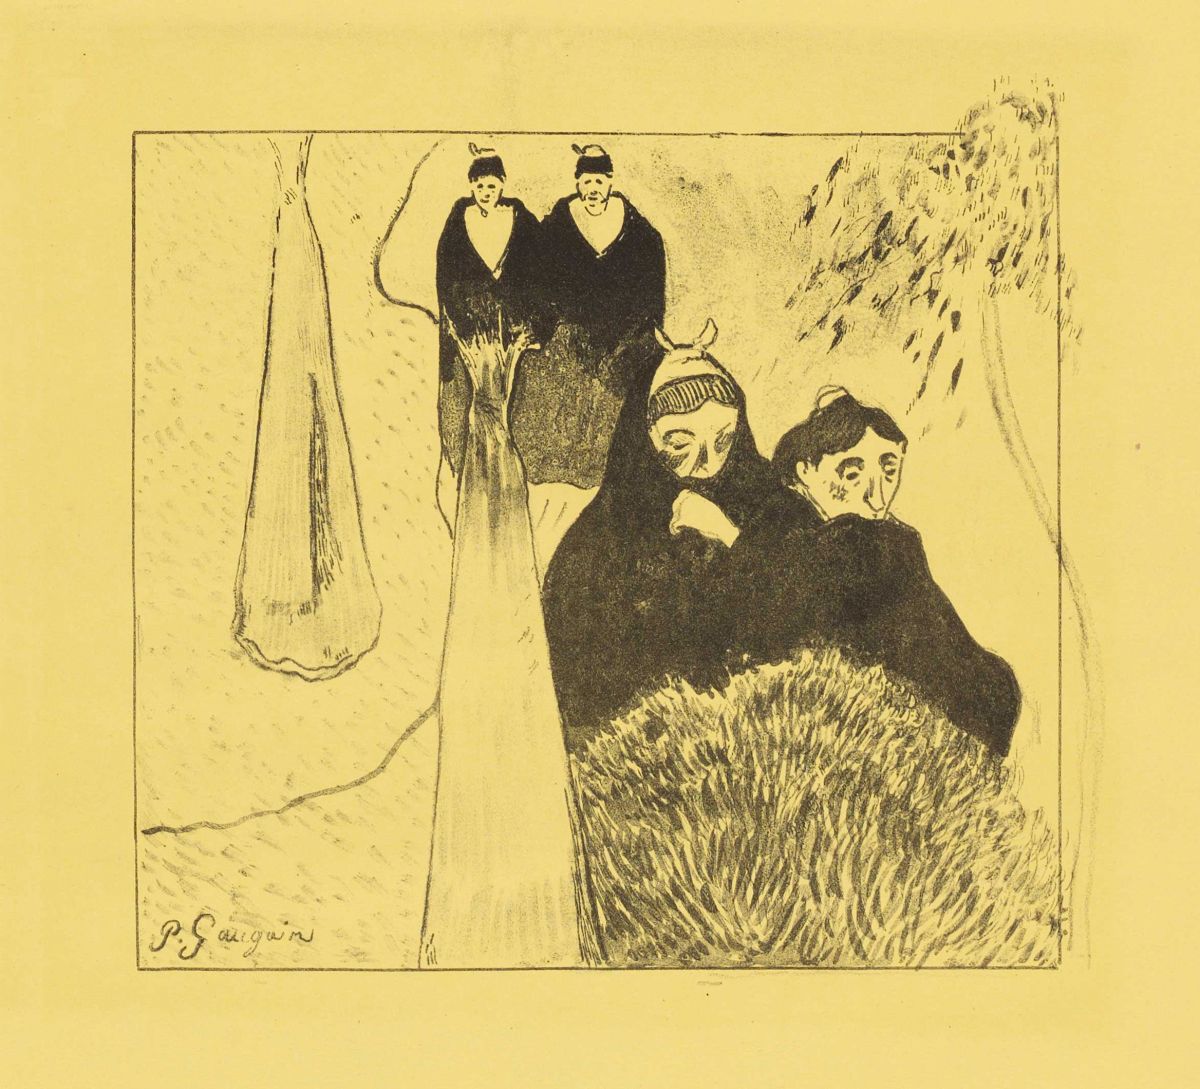 Paul Gauguin, Die alten Jungfern von Arles, 1889, Suite Volpini, Zinkografie auf kanariengelbem Velinpapier 19,2 x 20,8 cm © Albertina, Wien